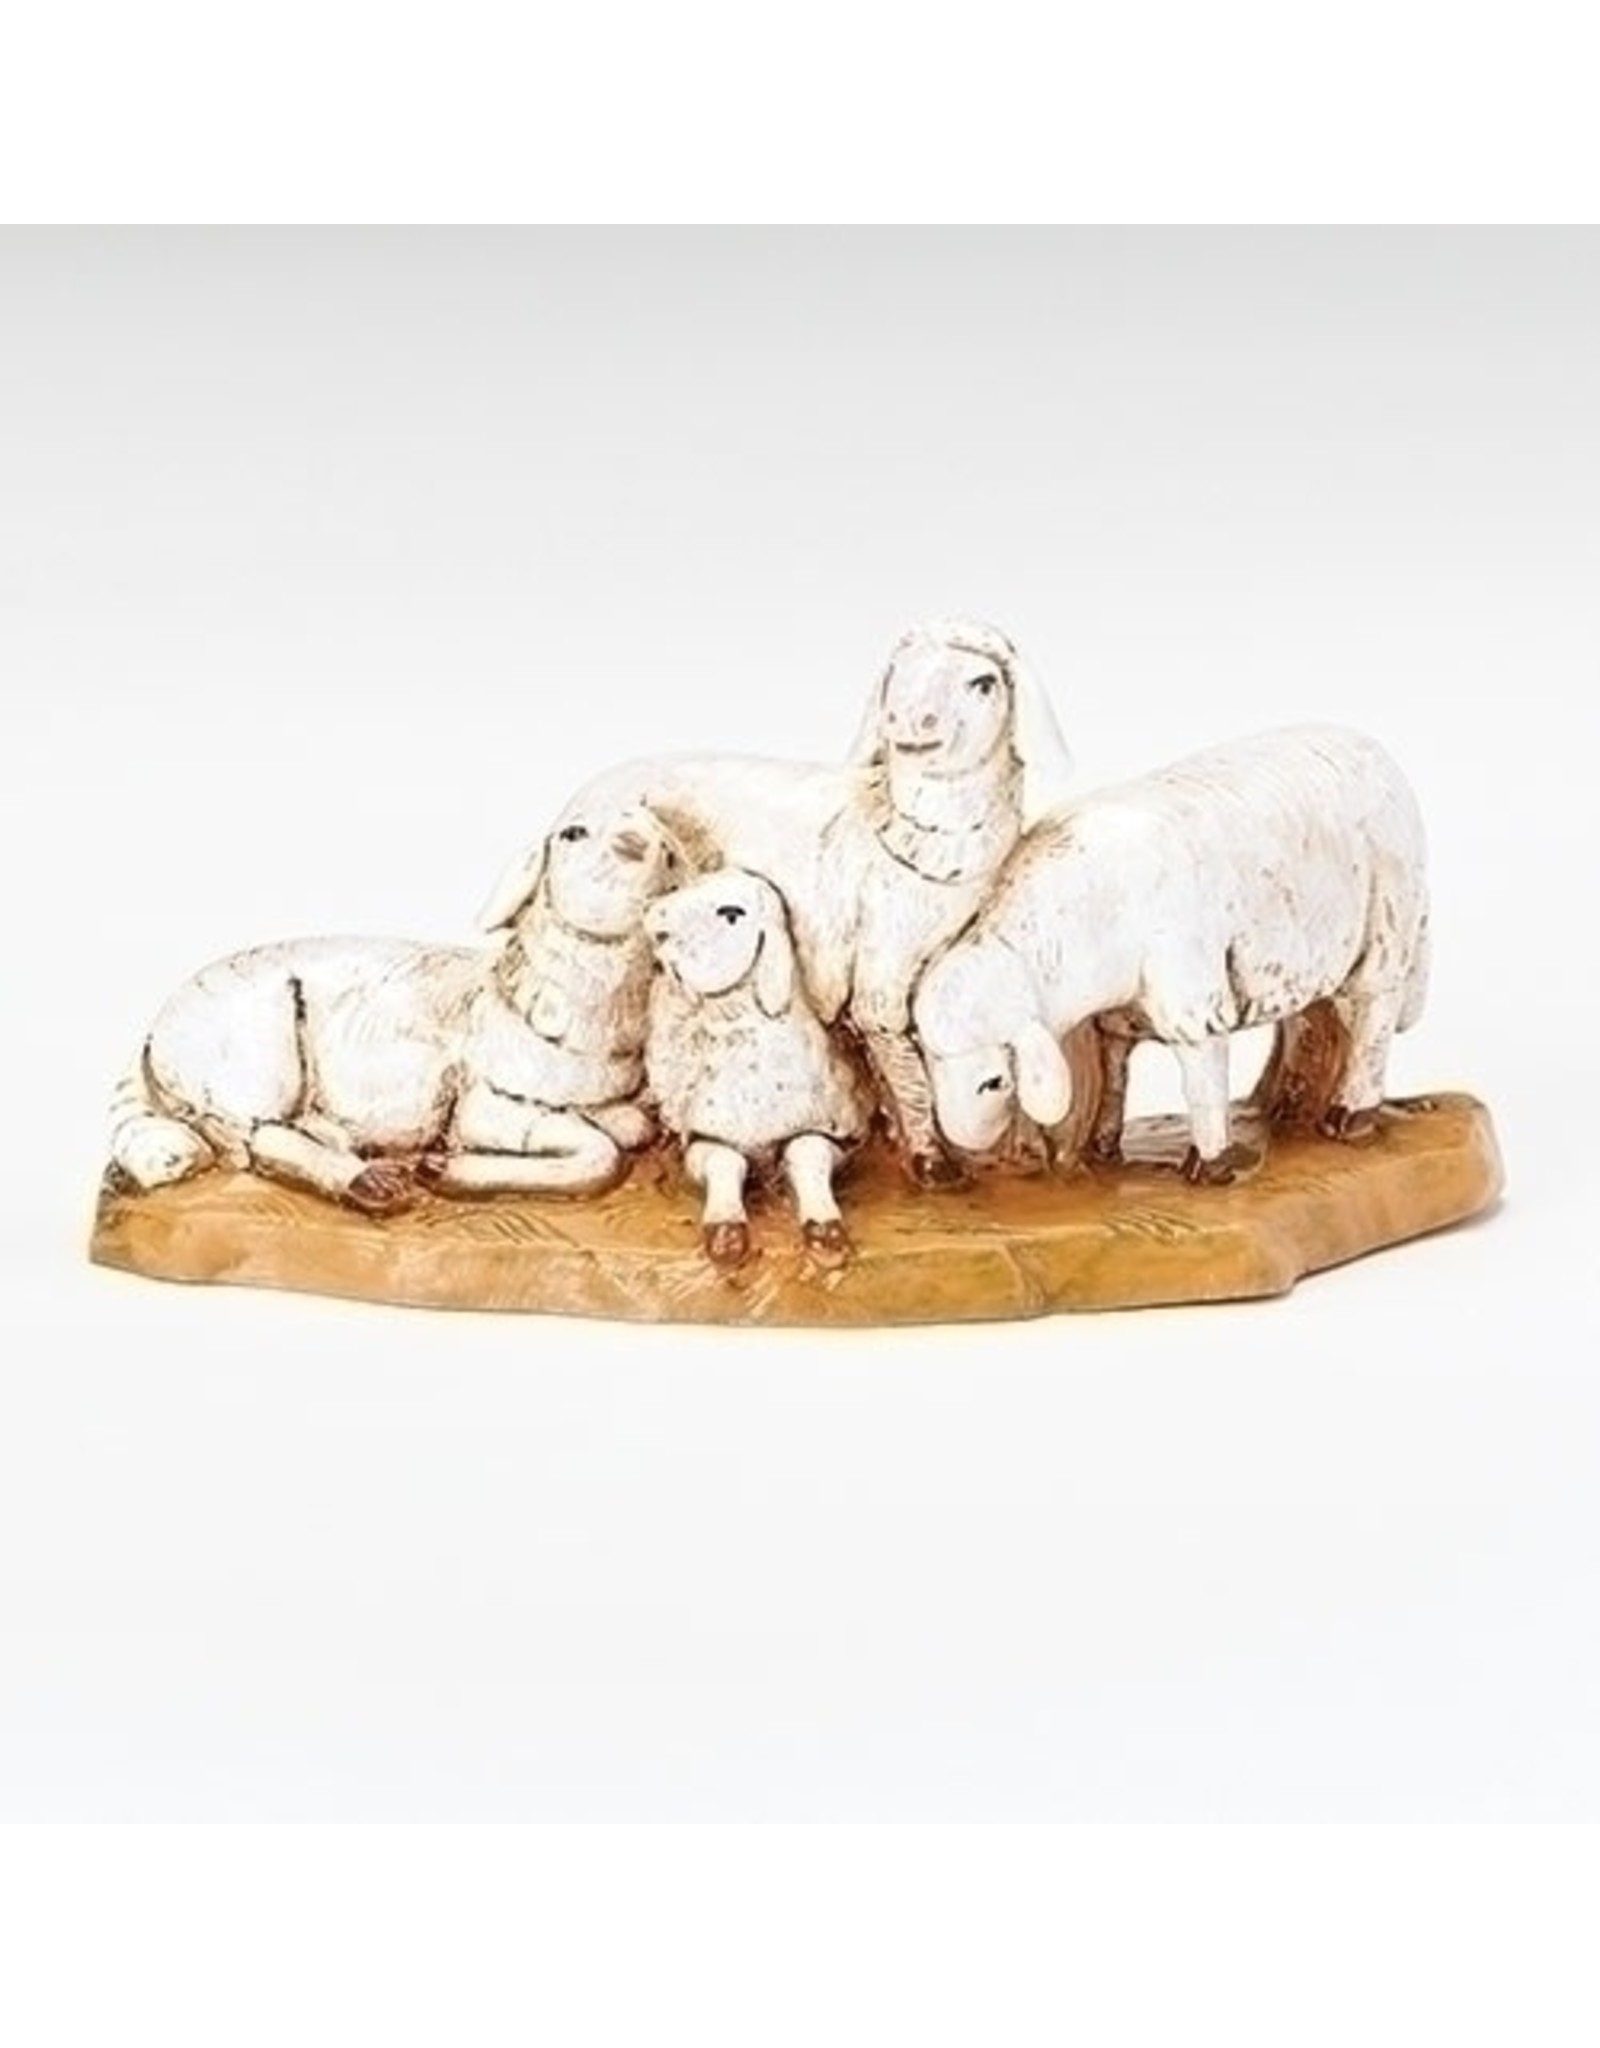 Roman Fontanini - Sheep Herd (5" Scale)